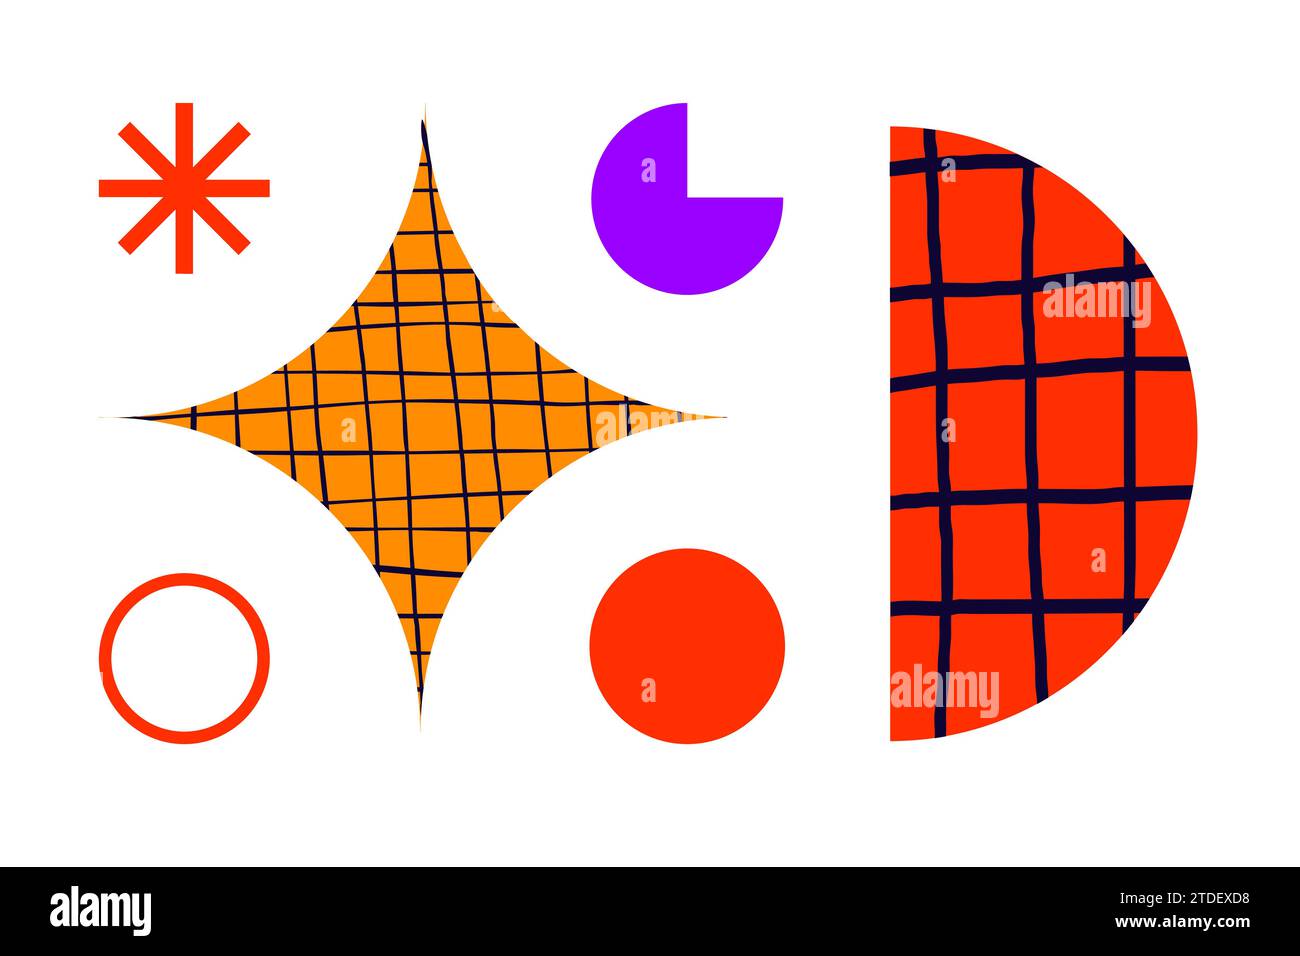 Poster brutalisti con forme geometriche astratte e griglie ingenue. Brutale figura contemporanea stella ovale onda spirale e altri elementi primitivi AN Illustrazione Vettoriale